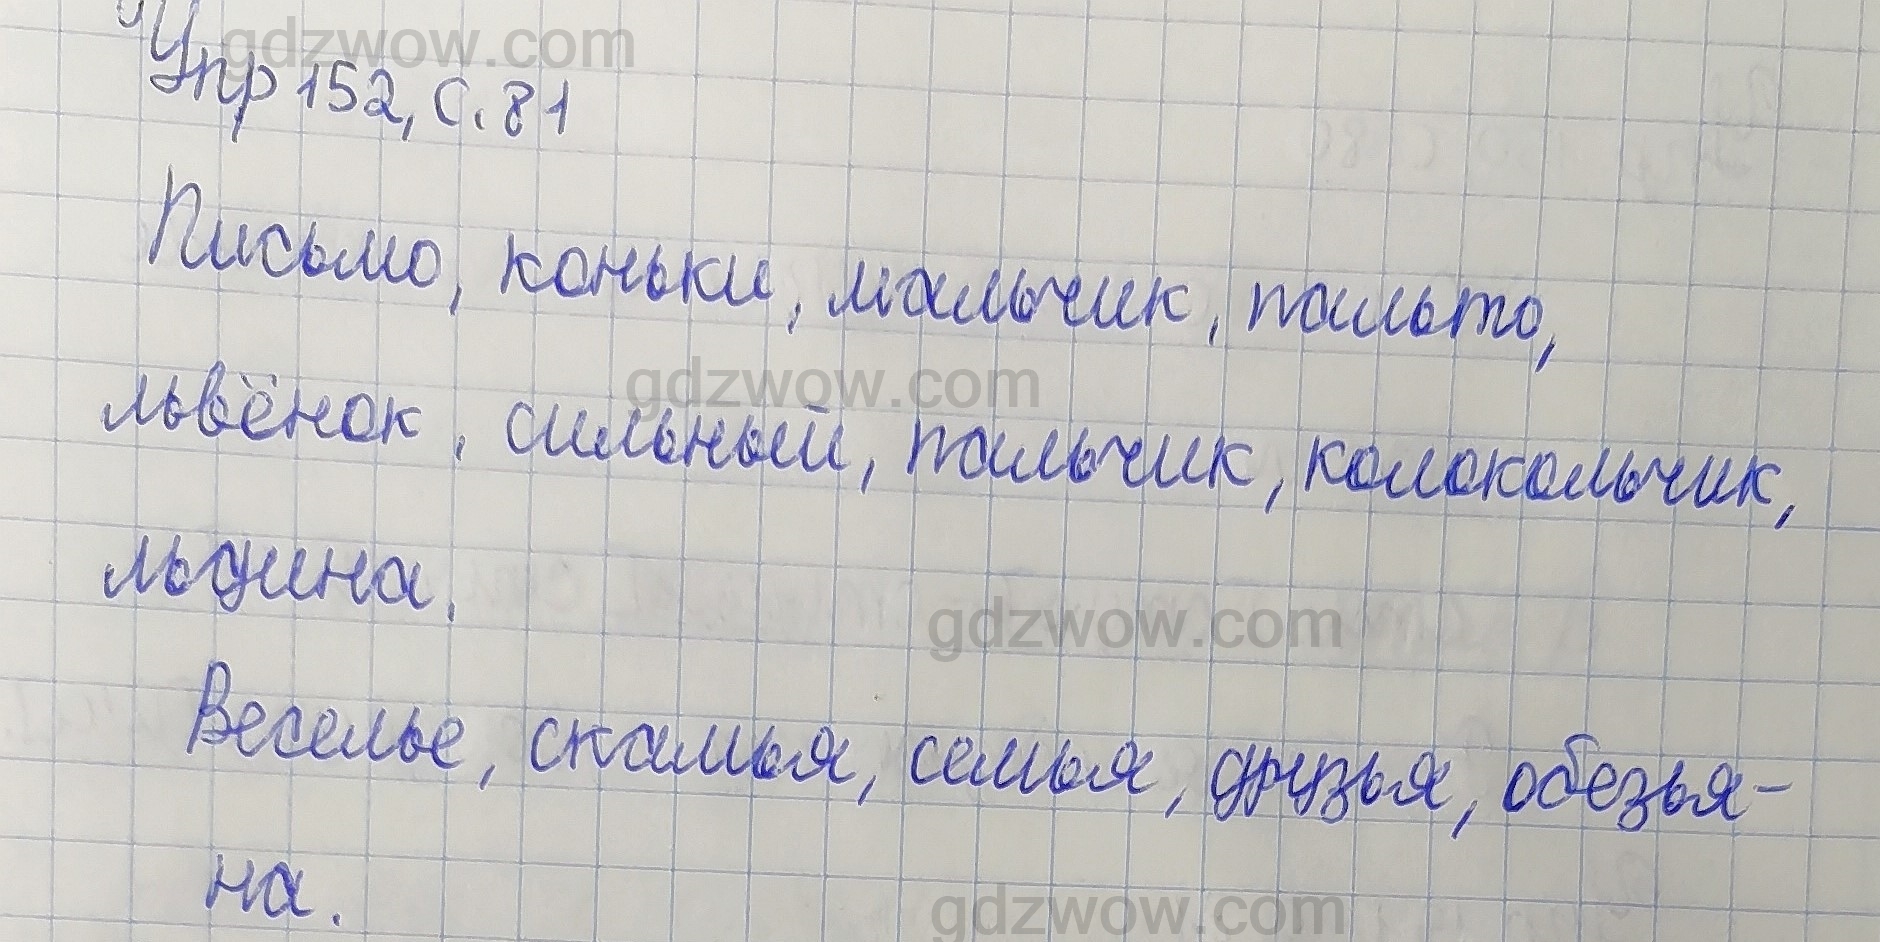 Онлайн-решебник по русскому языку за 2 класс от Поляковой поможет сделать домашние задания